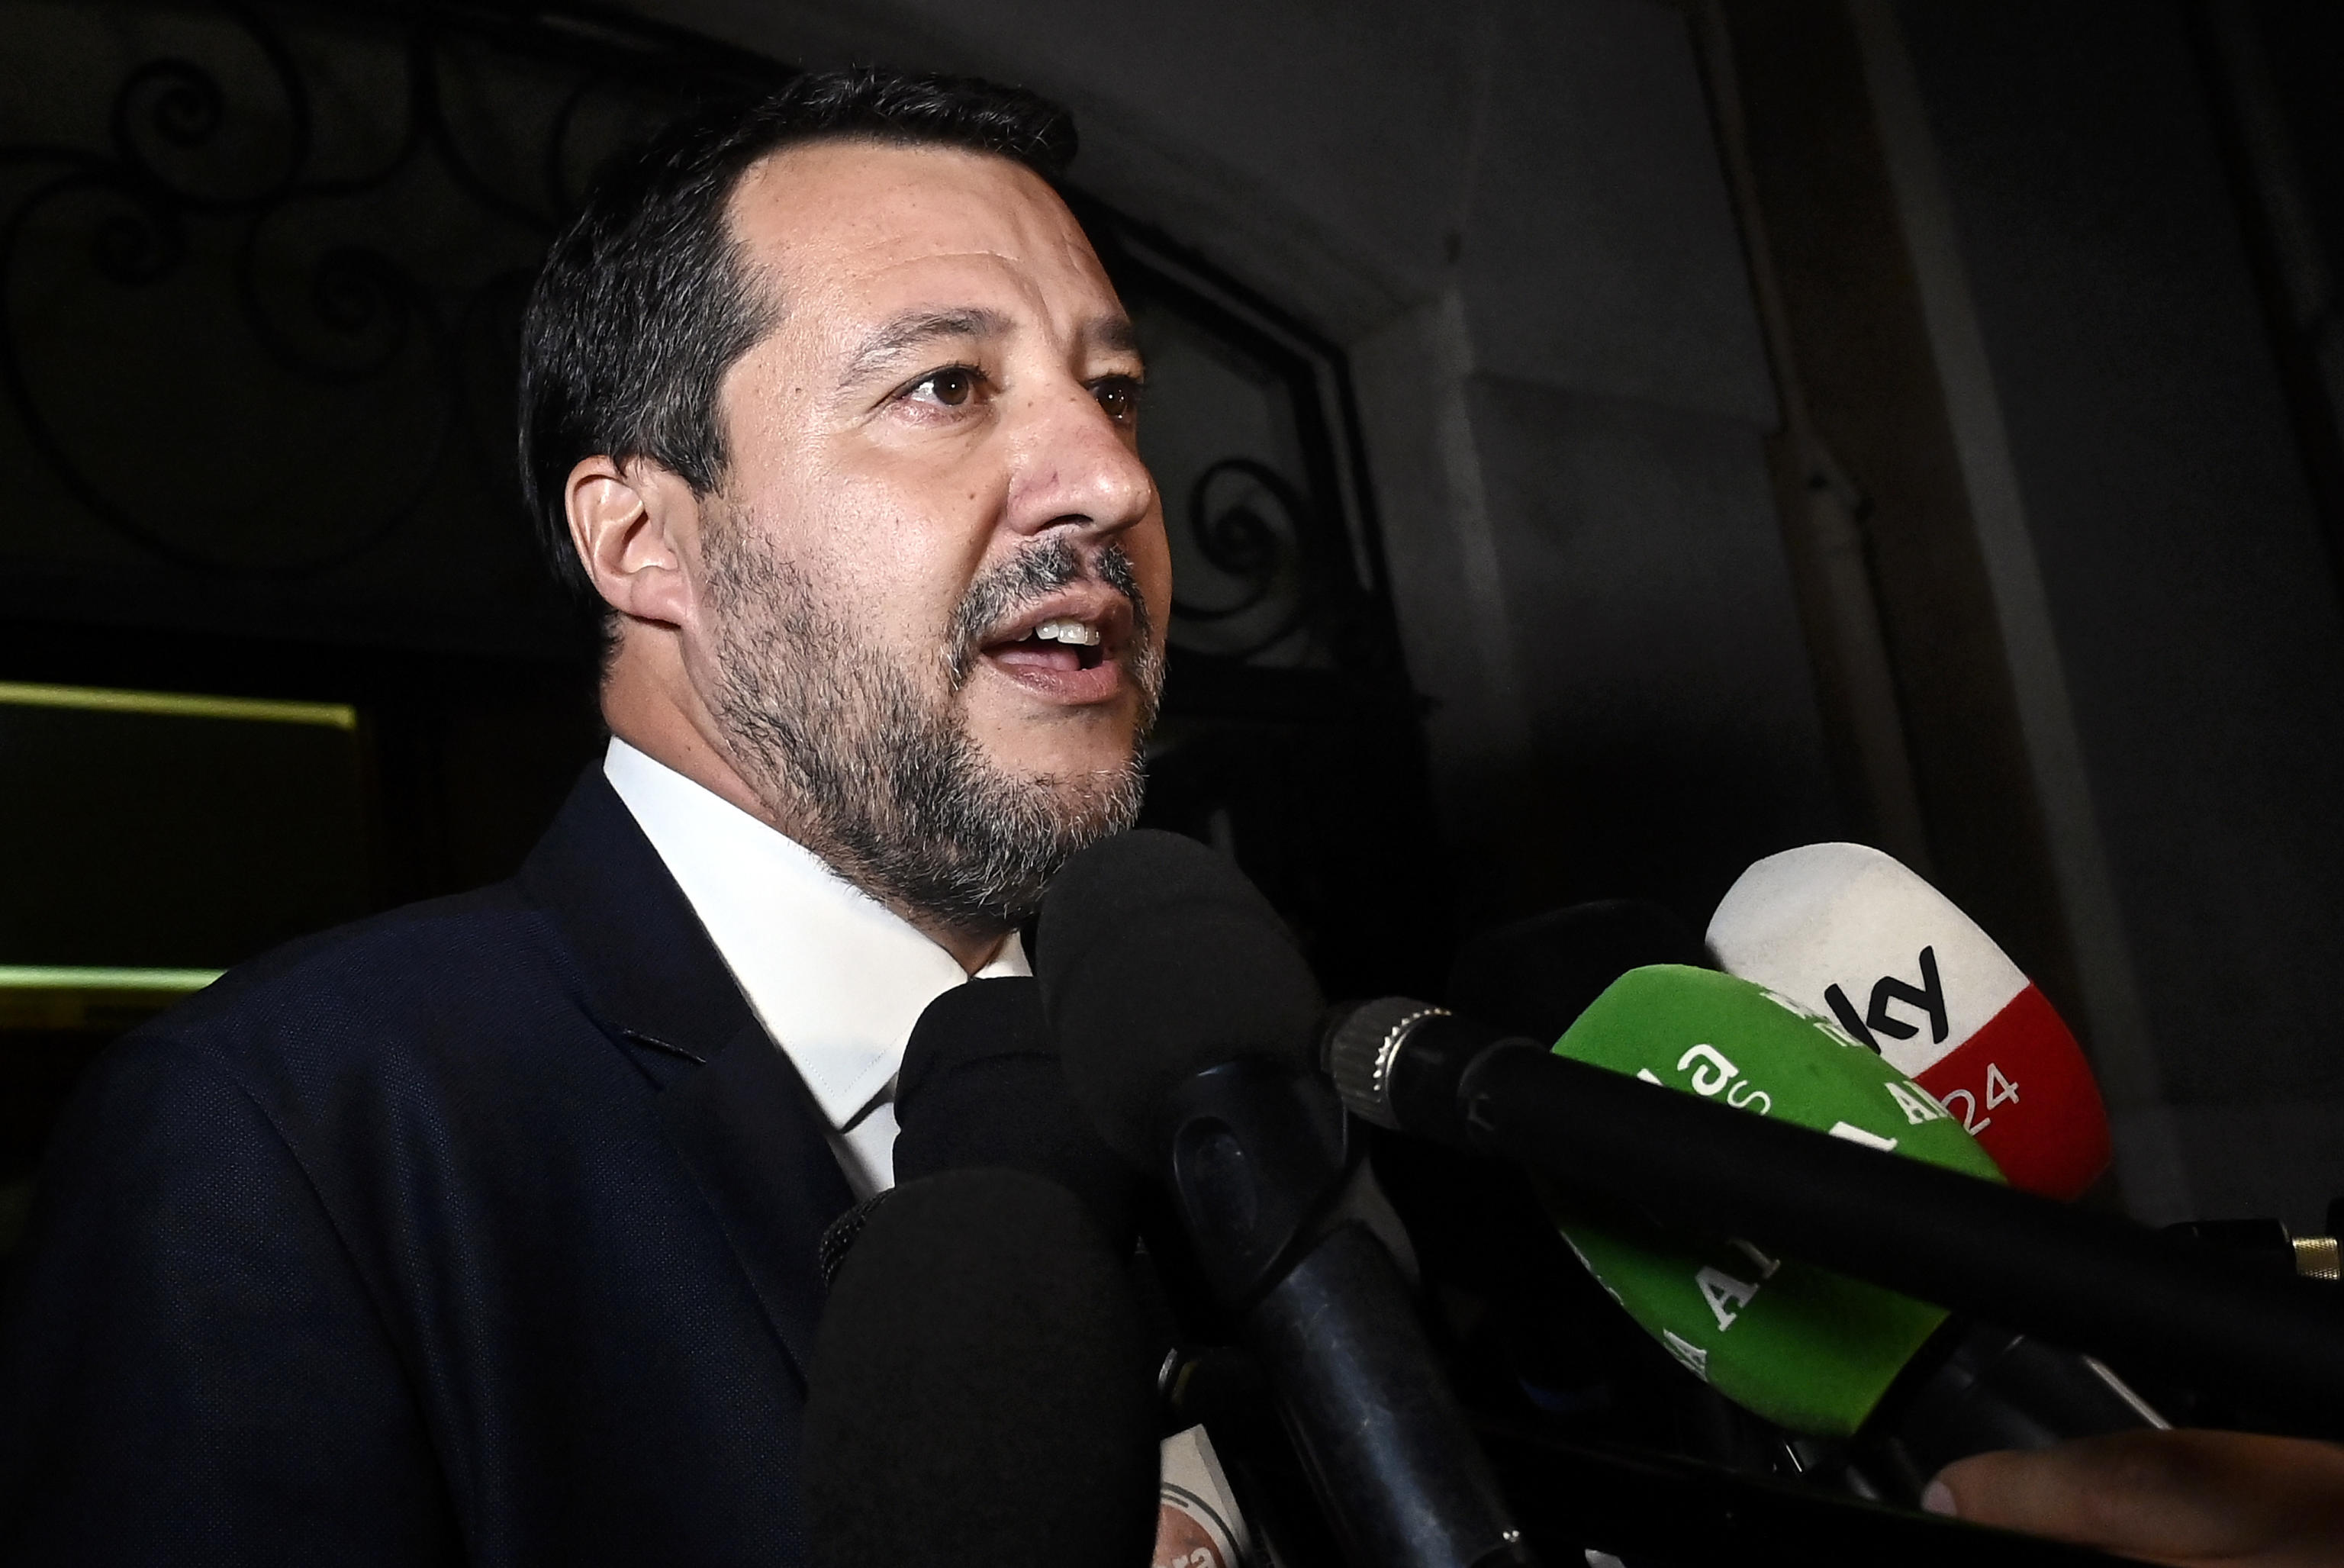 Quirinale, Salvini insiste: «Voglio una presidente donna». Letta: «È durissima». Lega verso l’astensione